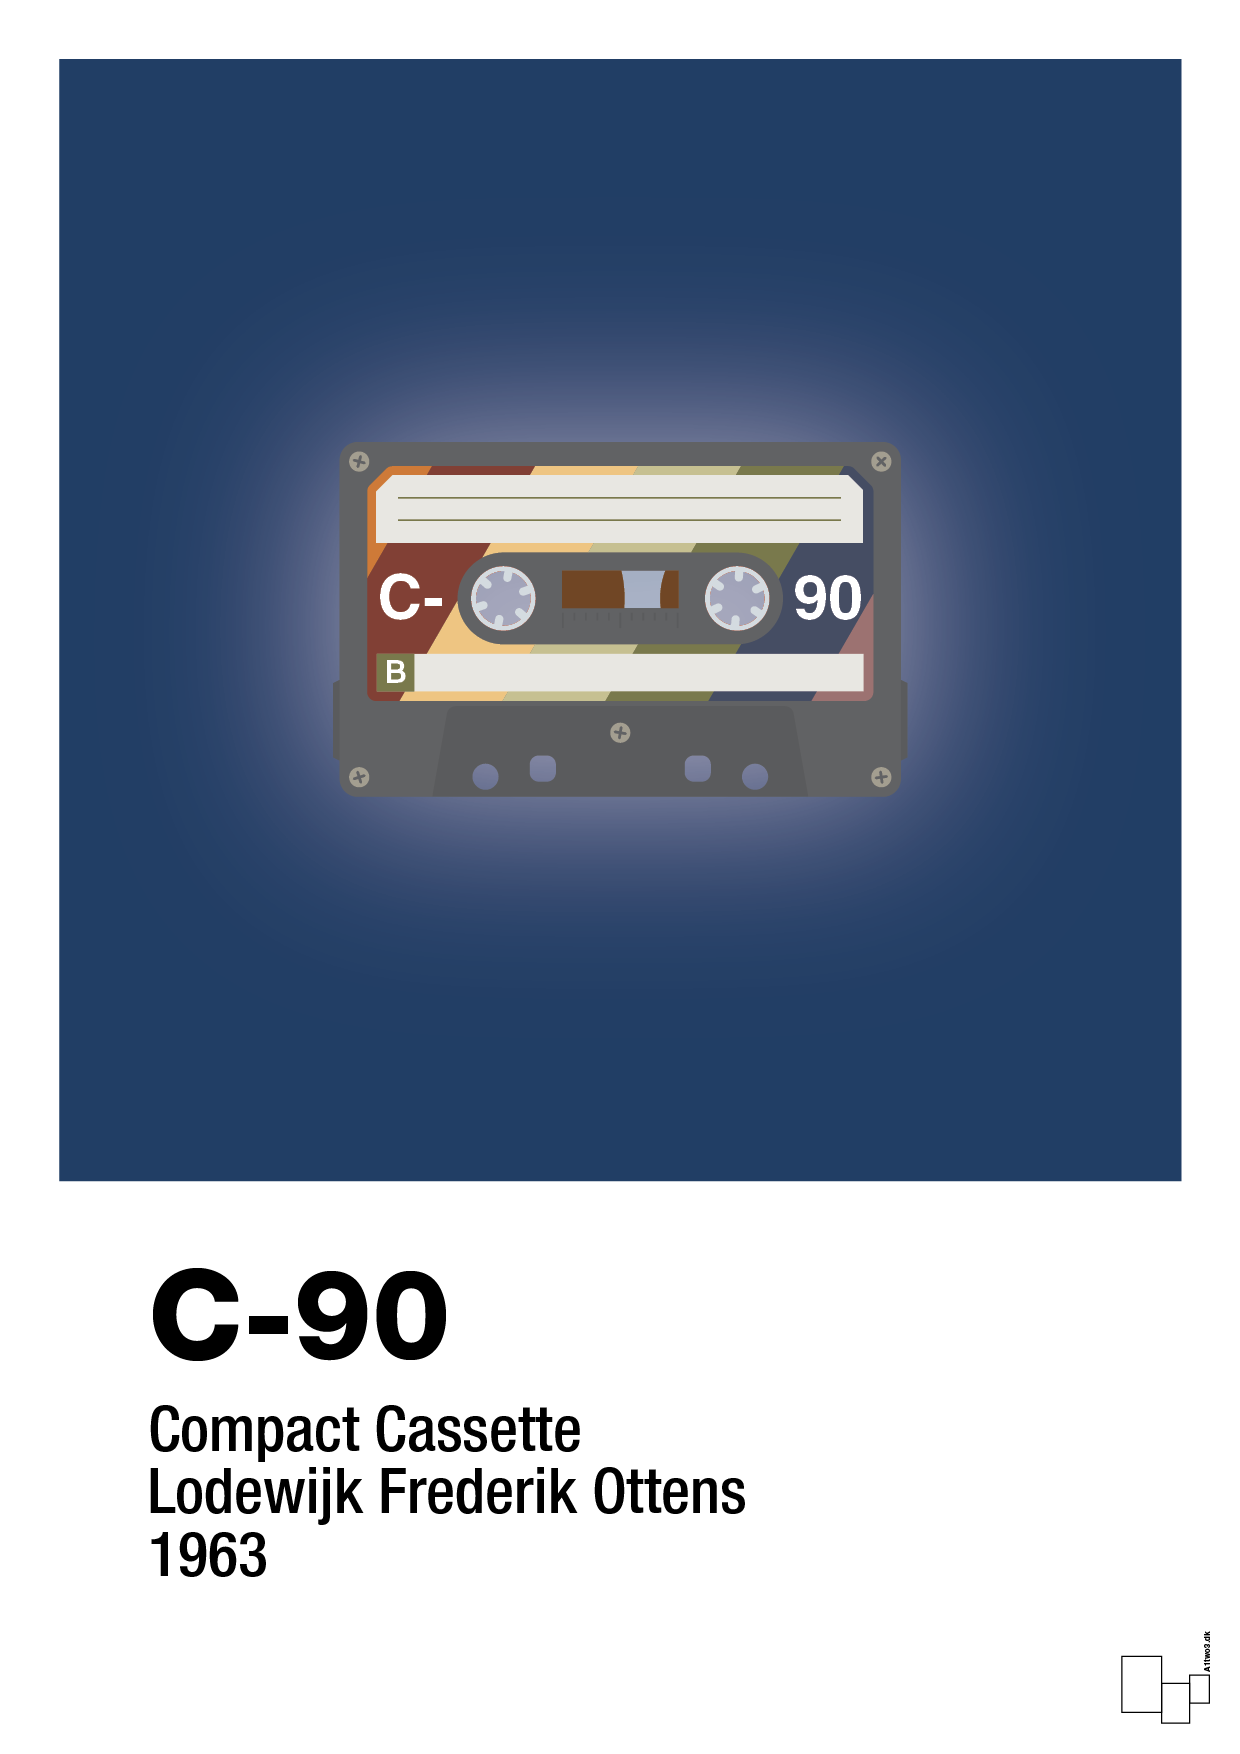 kassettebånd c-90 - Plakat med Grafik i Lapis Blue